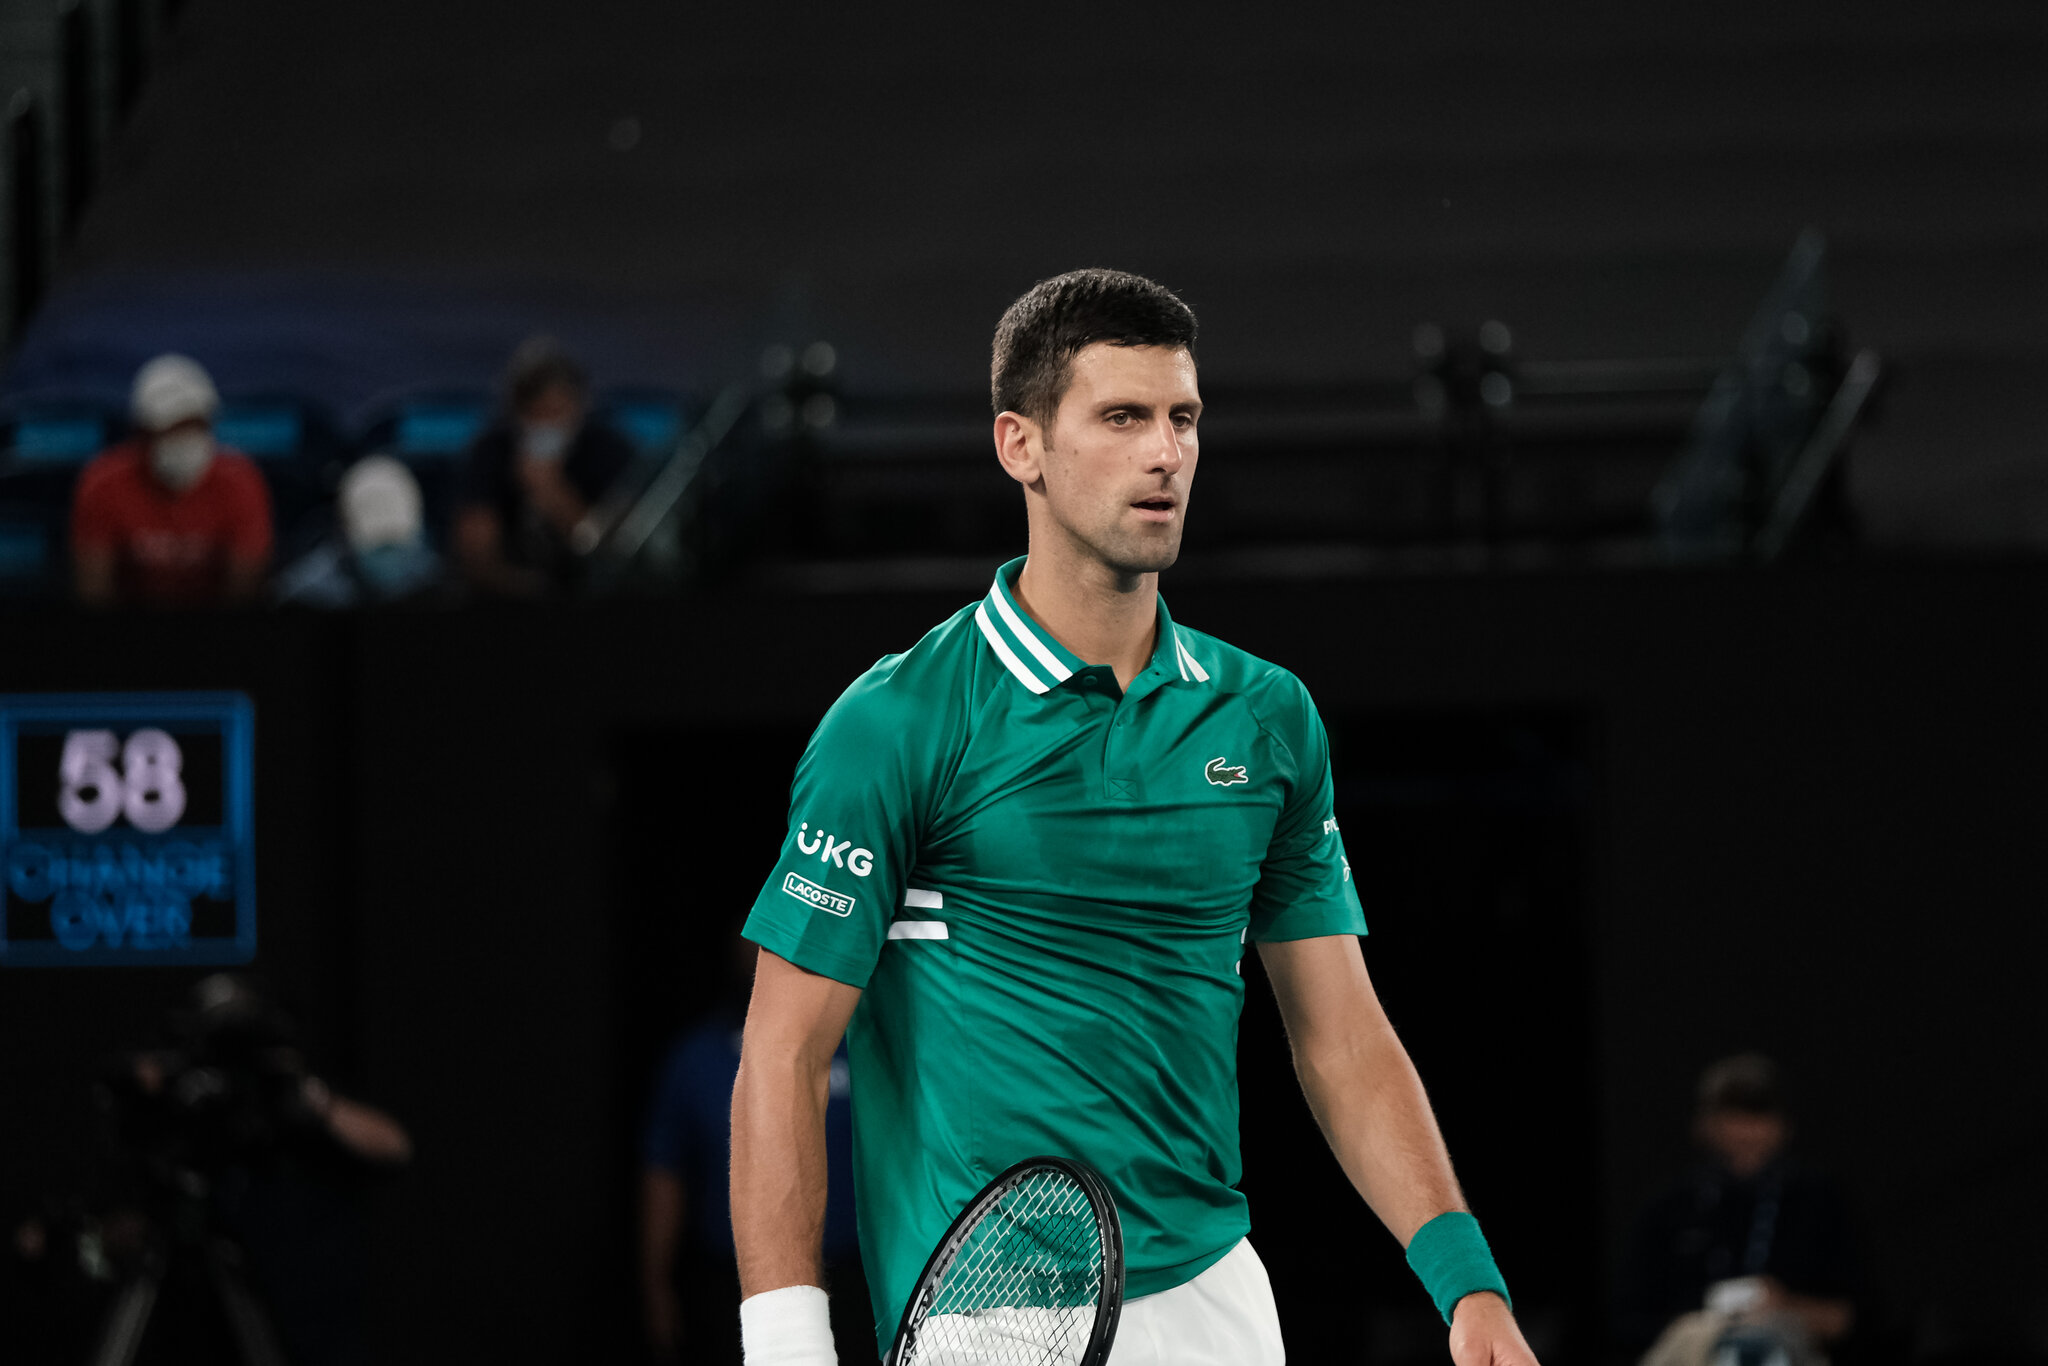 TRỰC TIẾP phiên điều trần thứ 2 của Djokovic ở Australia: Phía Bộ trưởng Di trú Úc phản biện - Ảnh 12